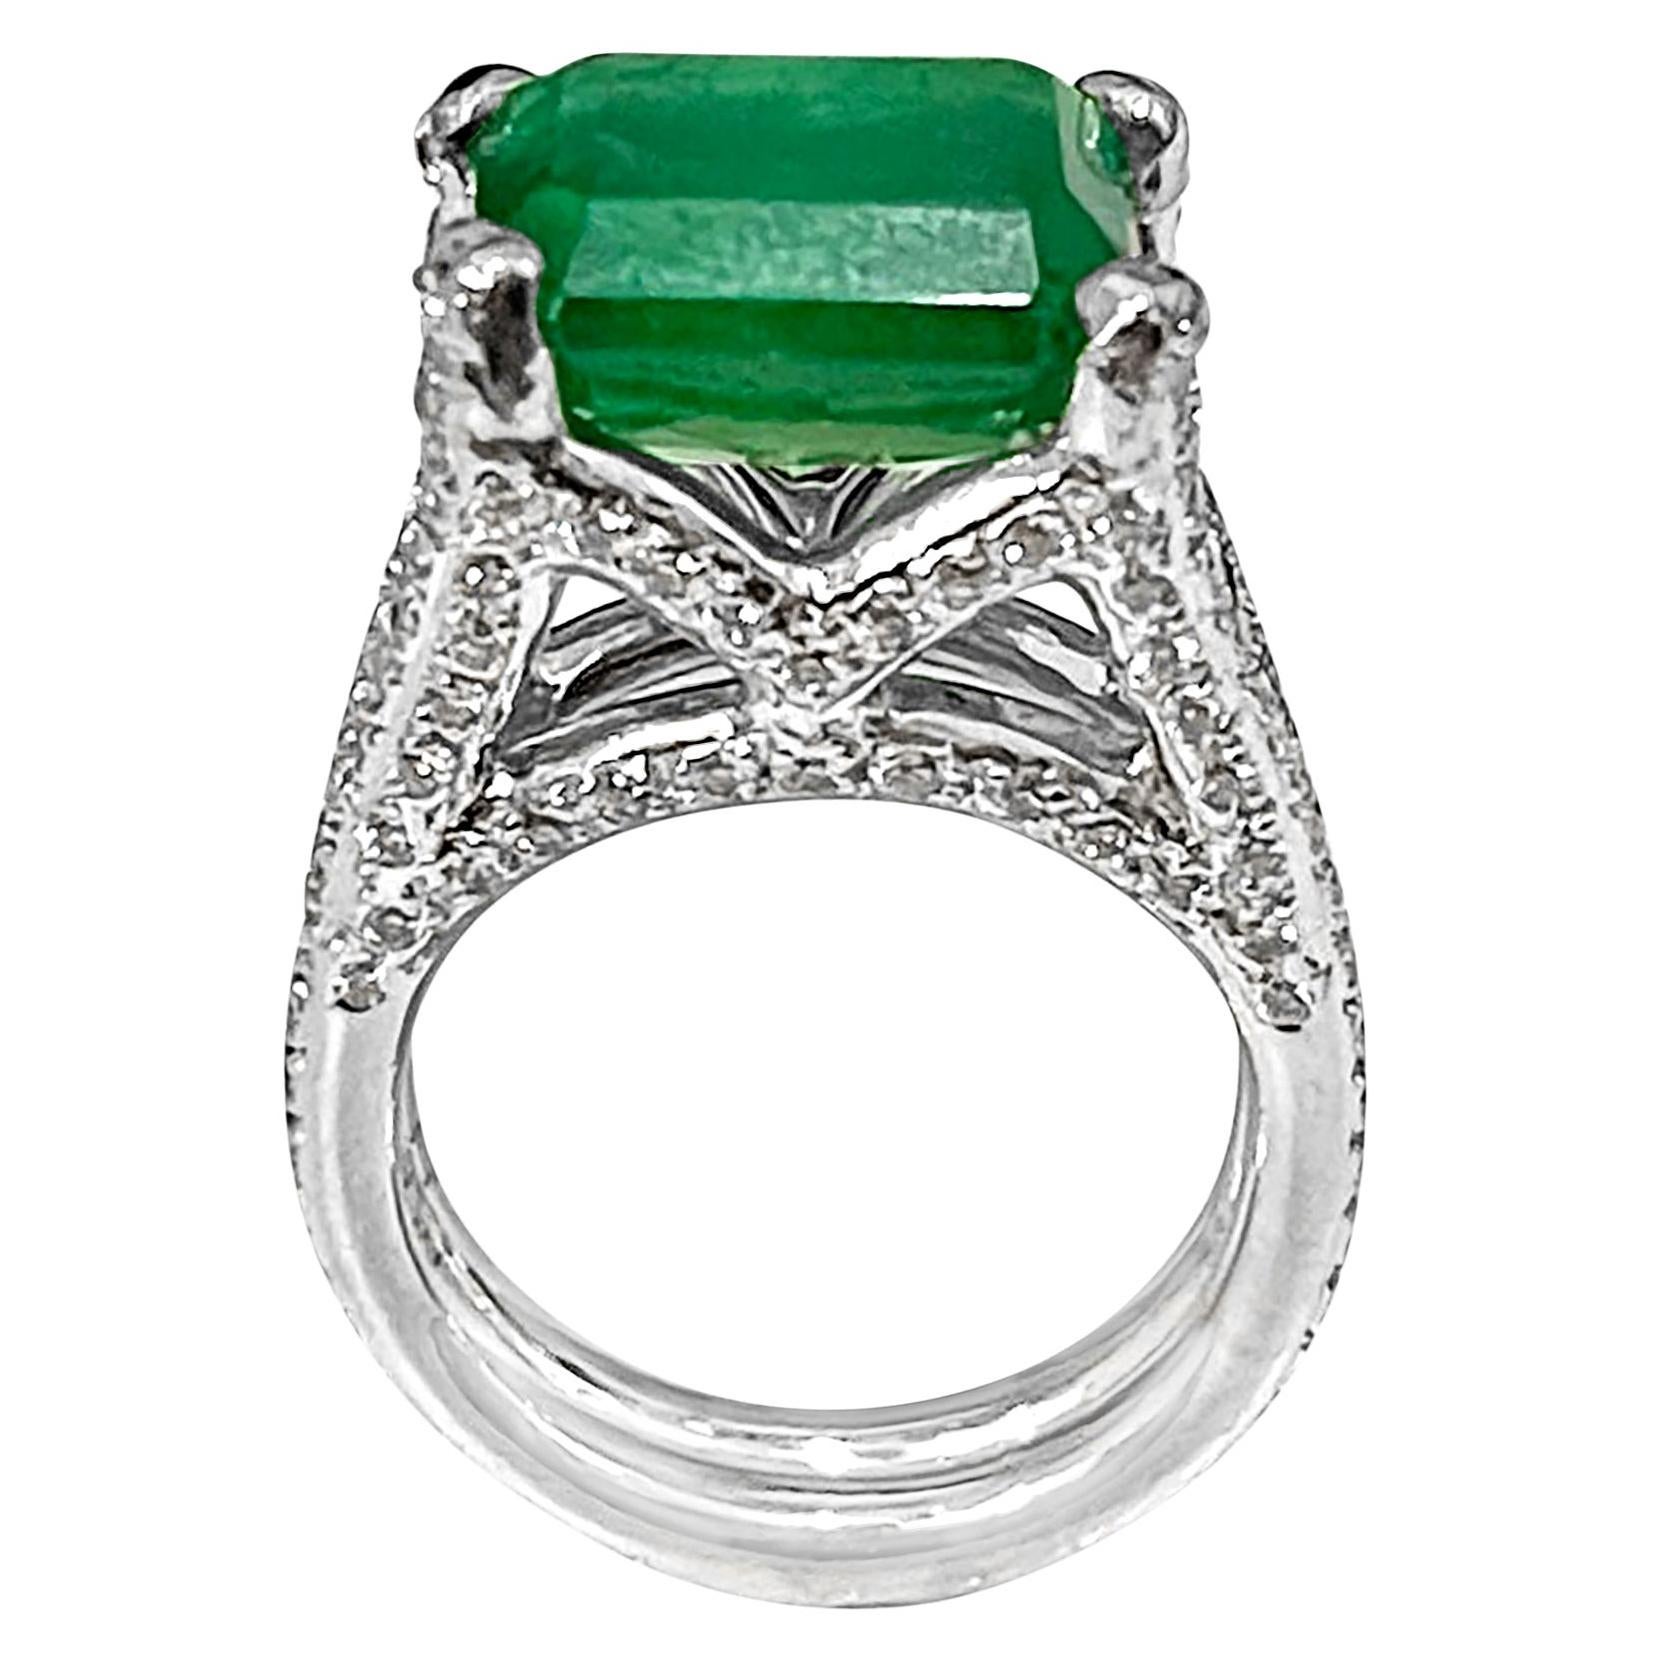 Platinring mit 8,5 Karat Smaragd im Smaragdschliff und 4 Karat Diamanten, Nachlass 6,5, Unisex